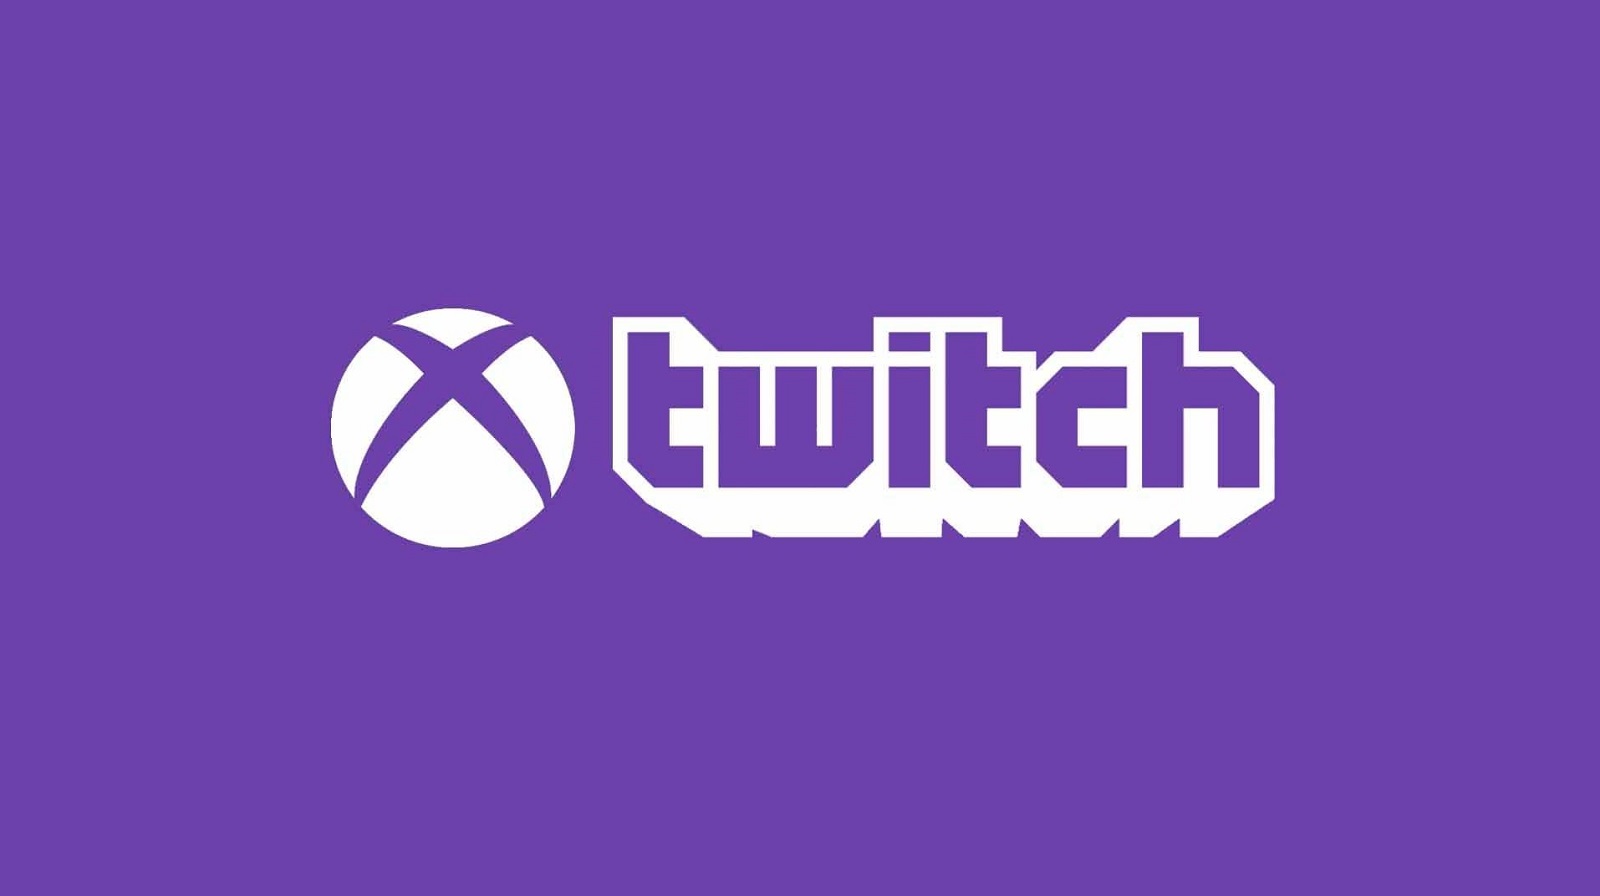 Το Twitch επιστρέφει επισήμως στο Xbox dashboard με το επόμενο μεγάλο update